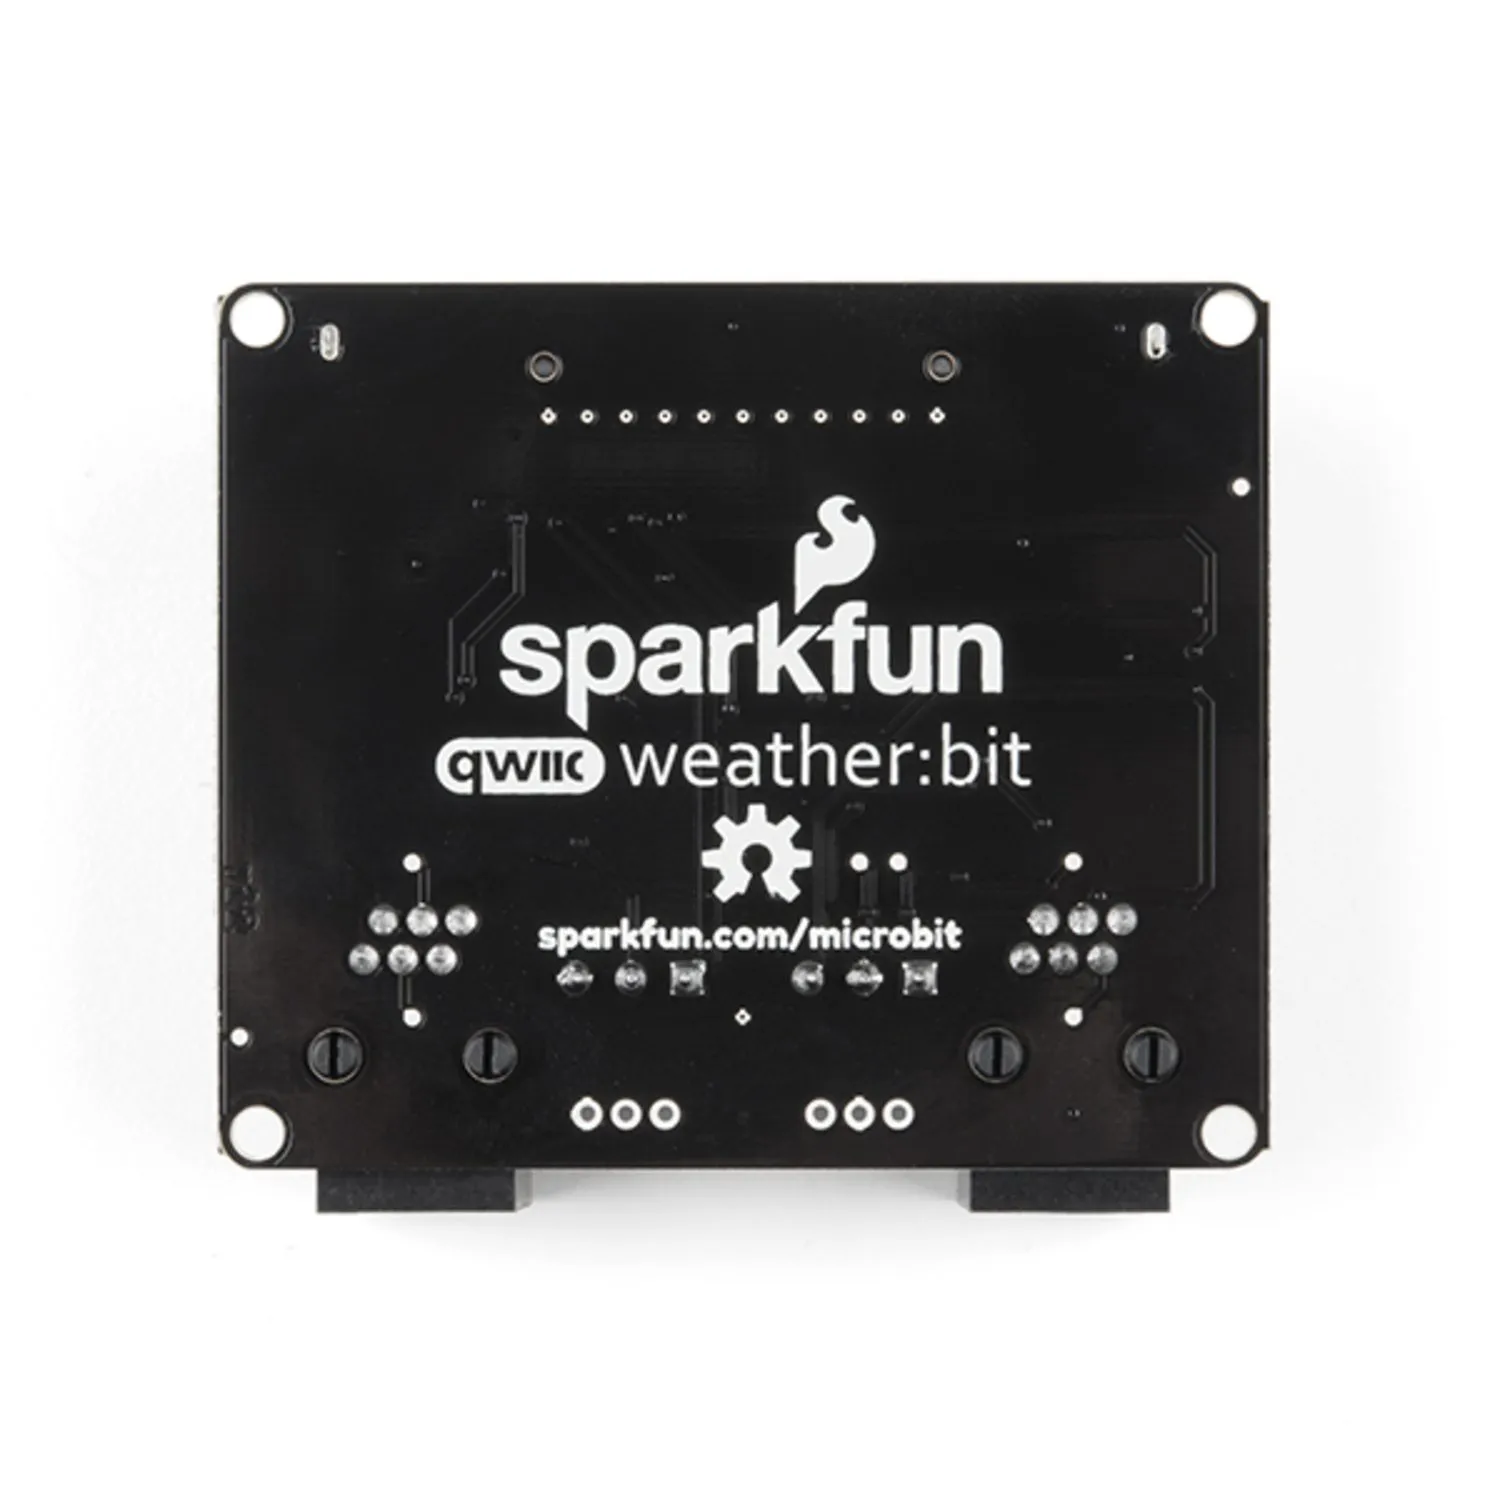 Photo of SparkFun weather:bit - micro:bit Carrier Board (Qwiic)